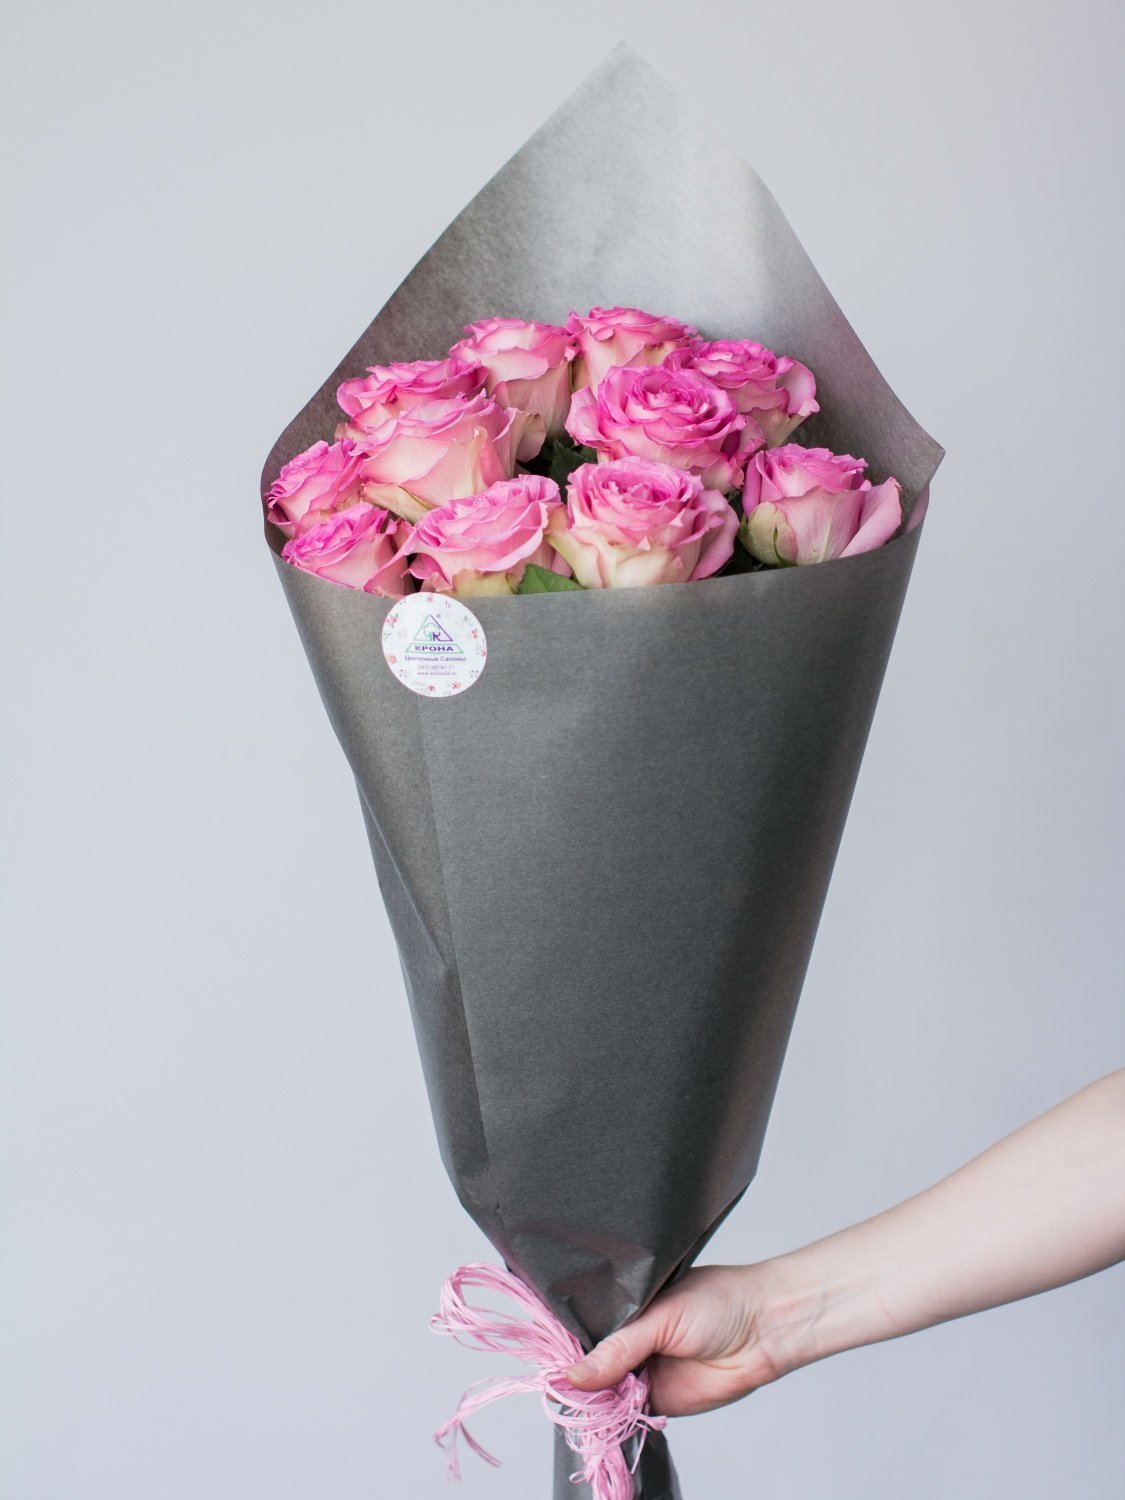 Как красиво завернуть цветы в бумагу. Упаковка для цветов. Упаковка цветовв бумагу. Упаковка роз в бумагу. Красивая упаковка для цветов.